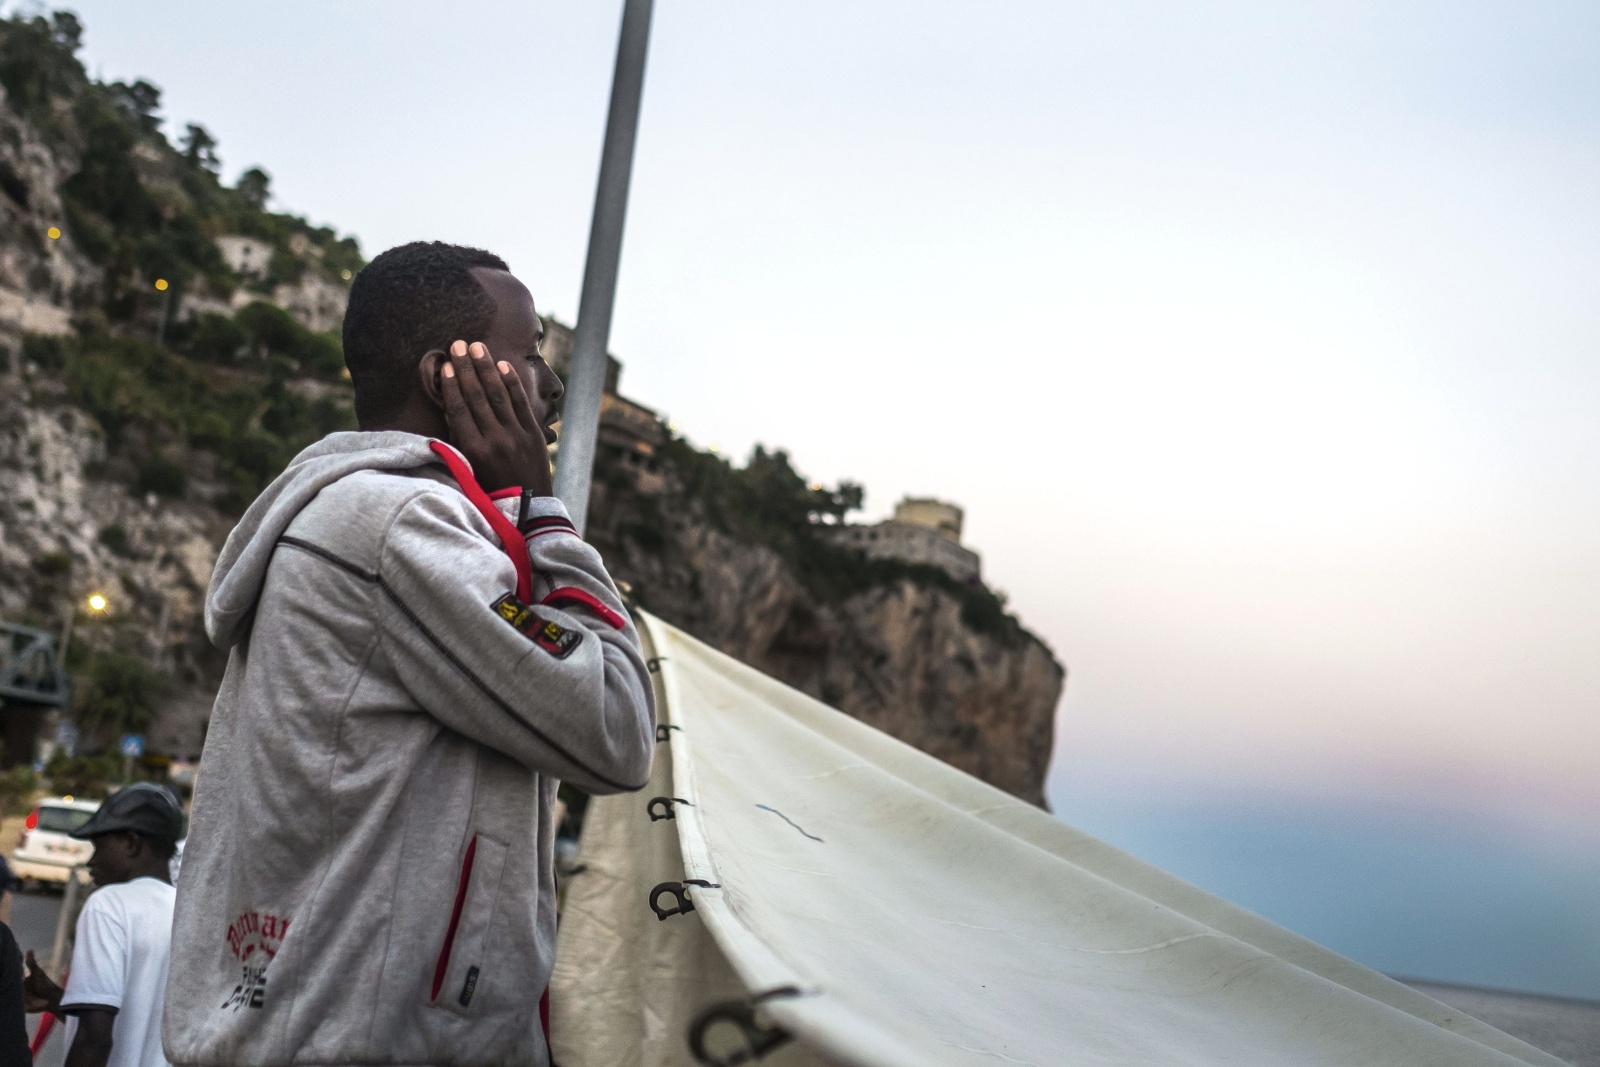 Ventimiglia, confine con la Francia  - Immigrati bloccati e respinti dalle autorità francesi sugli scogli dei Balzi Rossi - Preghiera sulla spiaggia 